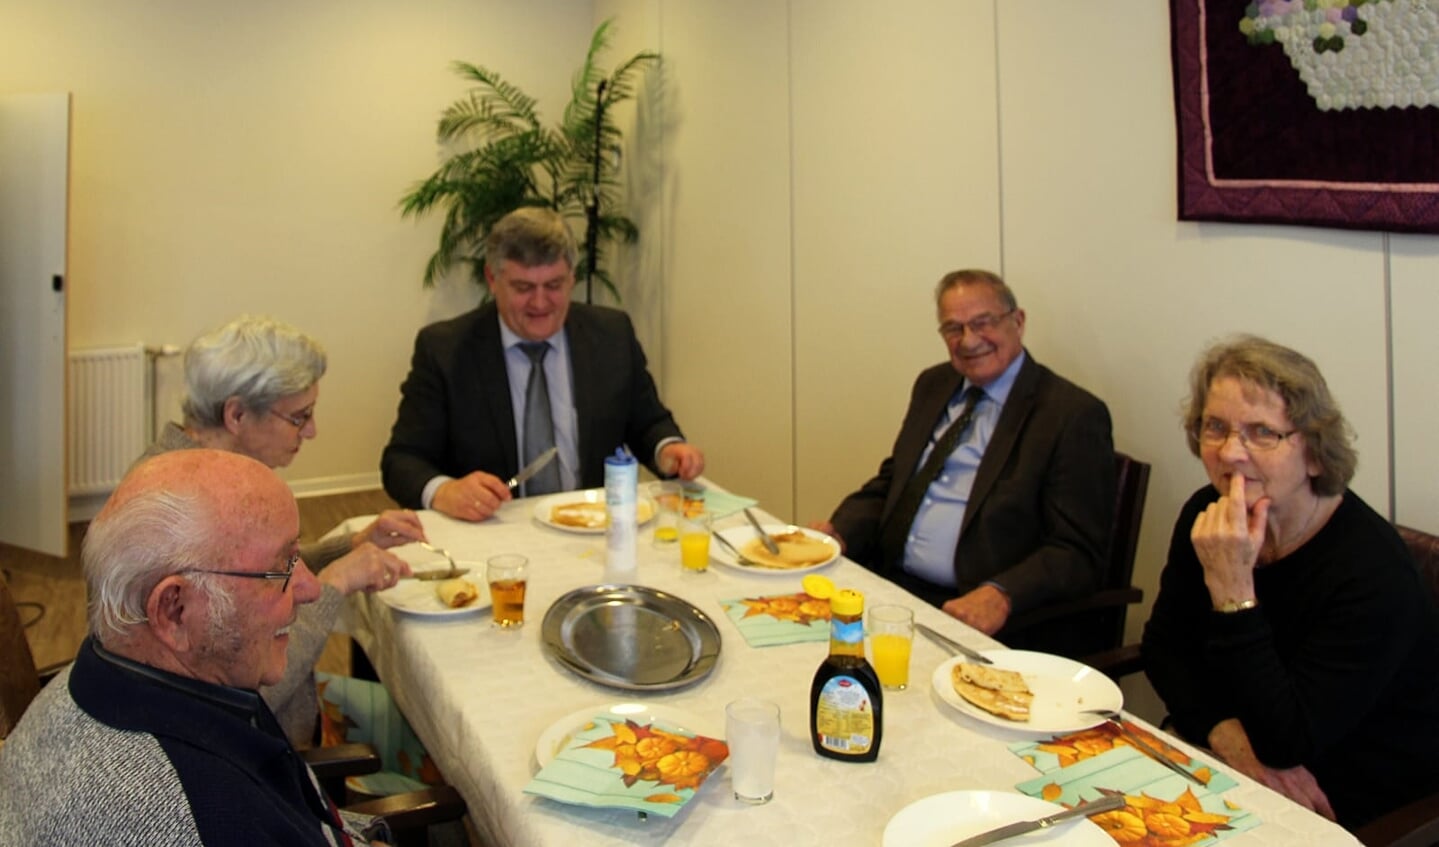 De burgemeester, Henk Lambooij, is eregast en eet ook een pannenkoek mee. 